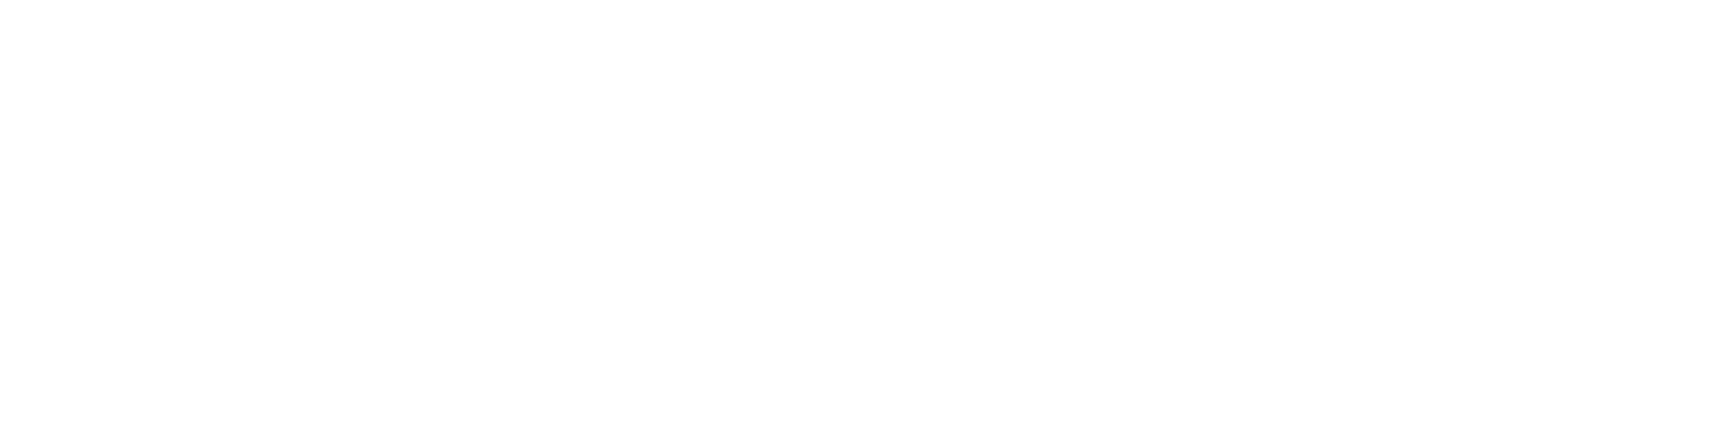 ELMNT_Logo wht